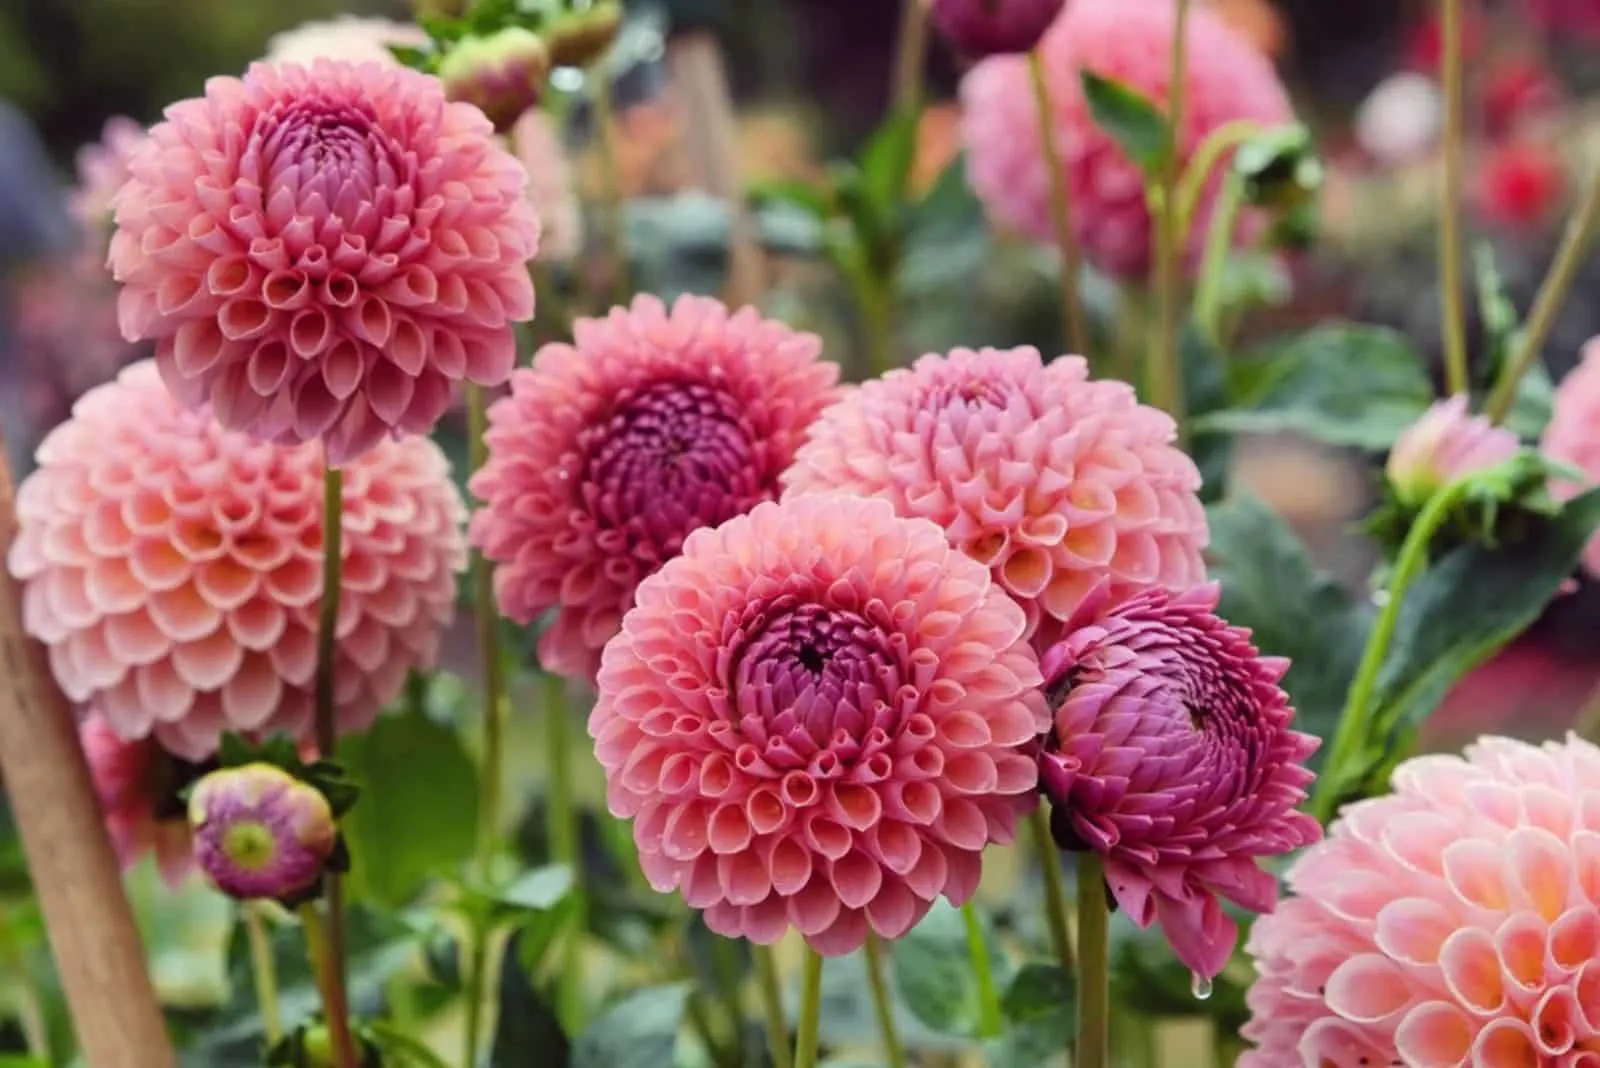 Pink Dahlia 'Jowey Winnie'' in flower garden